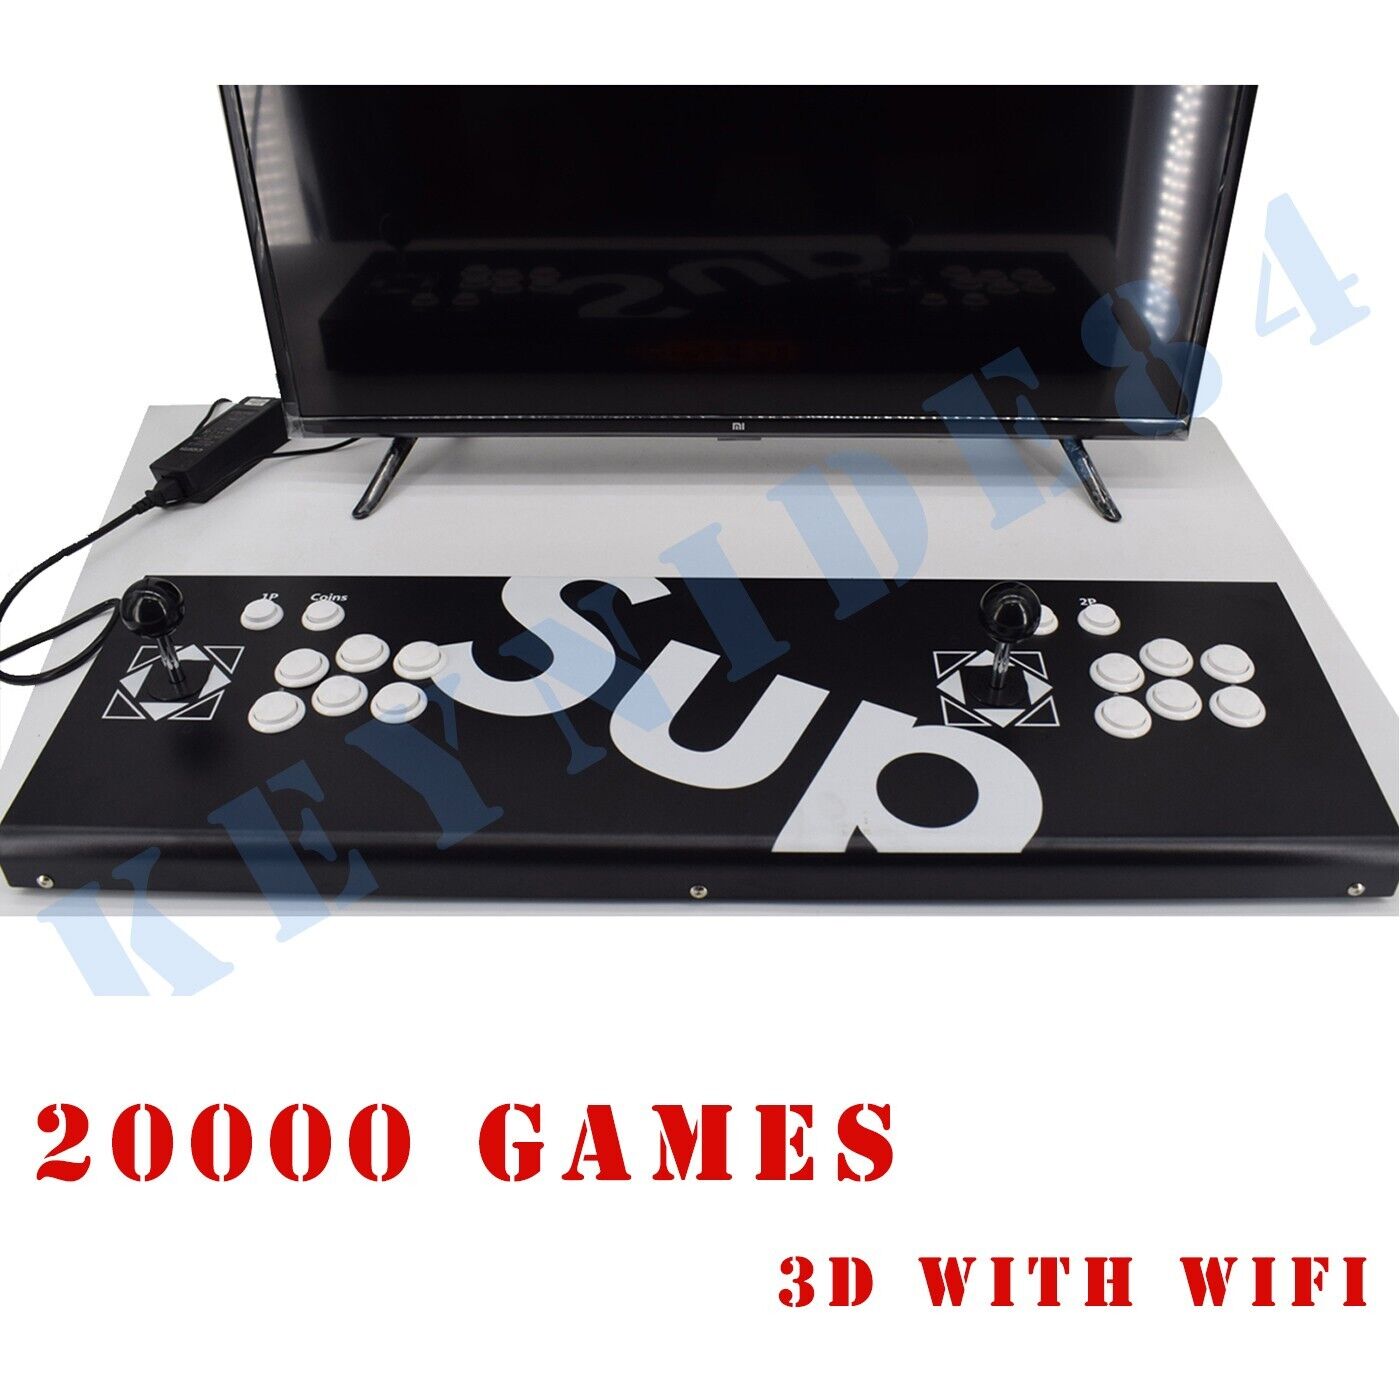 NEW 3D WiFi ALL Metal Lengthen 20000 Games Pandora Box Home Arcade Retro Video